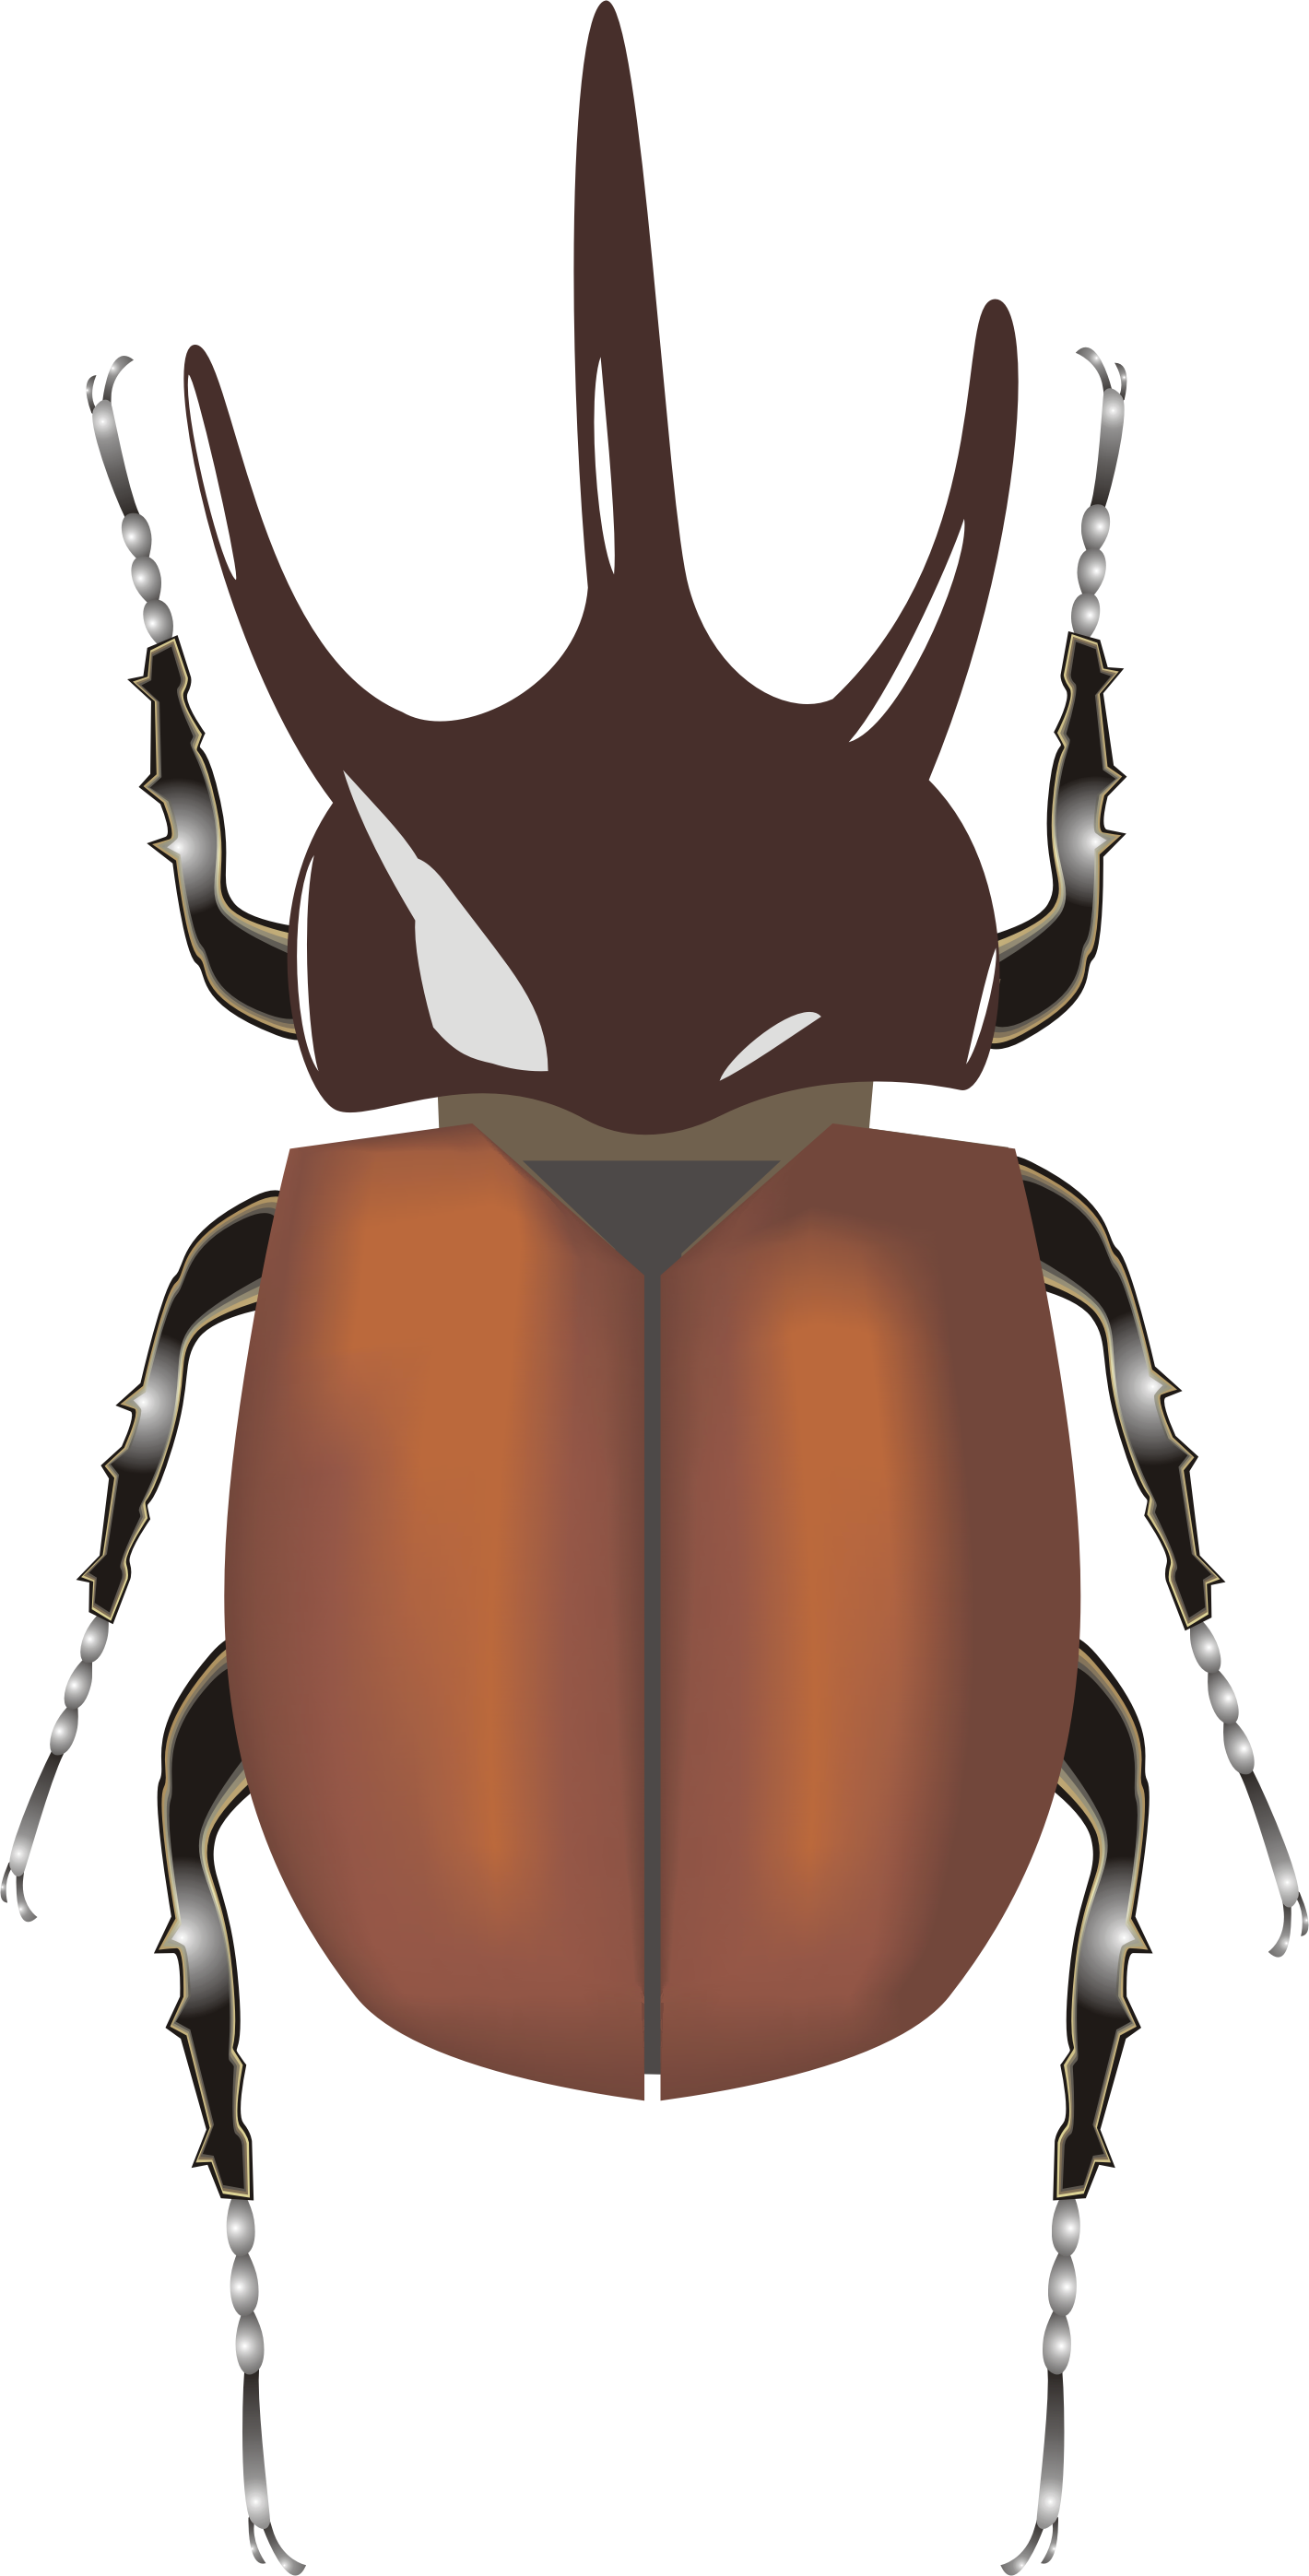 Elephant Beetle (1420x2795)